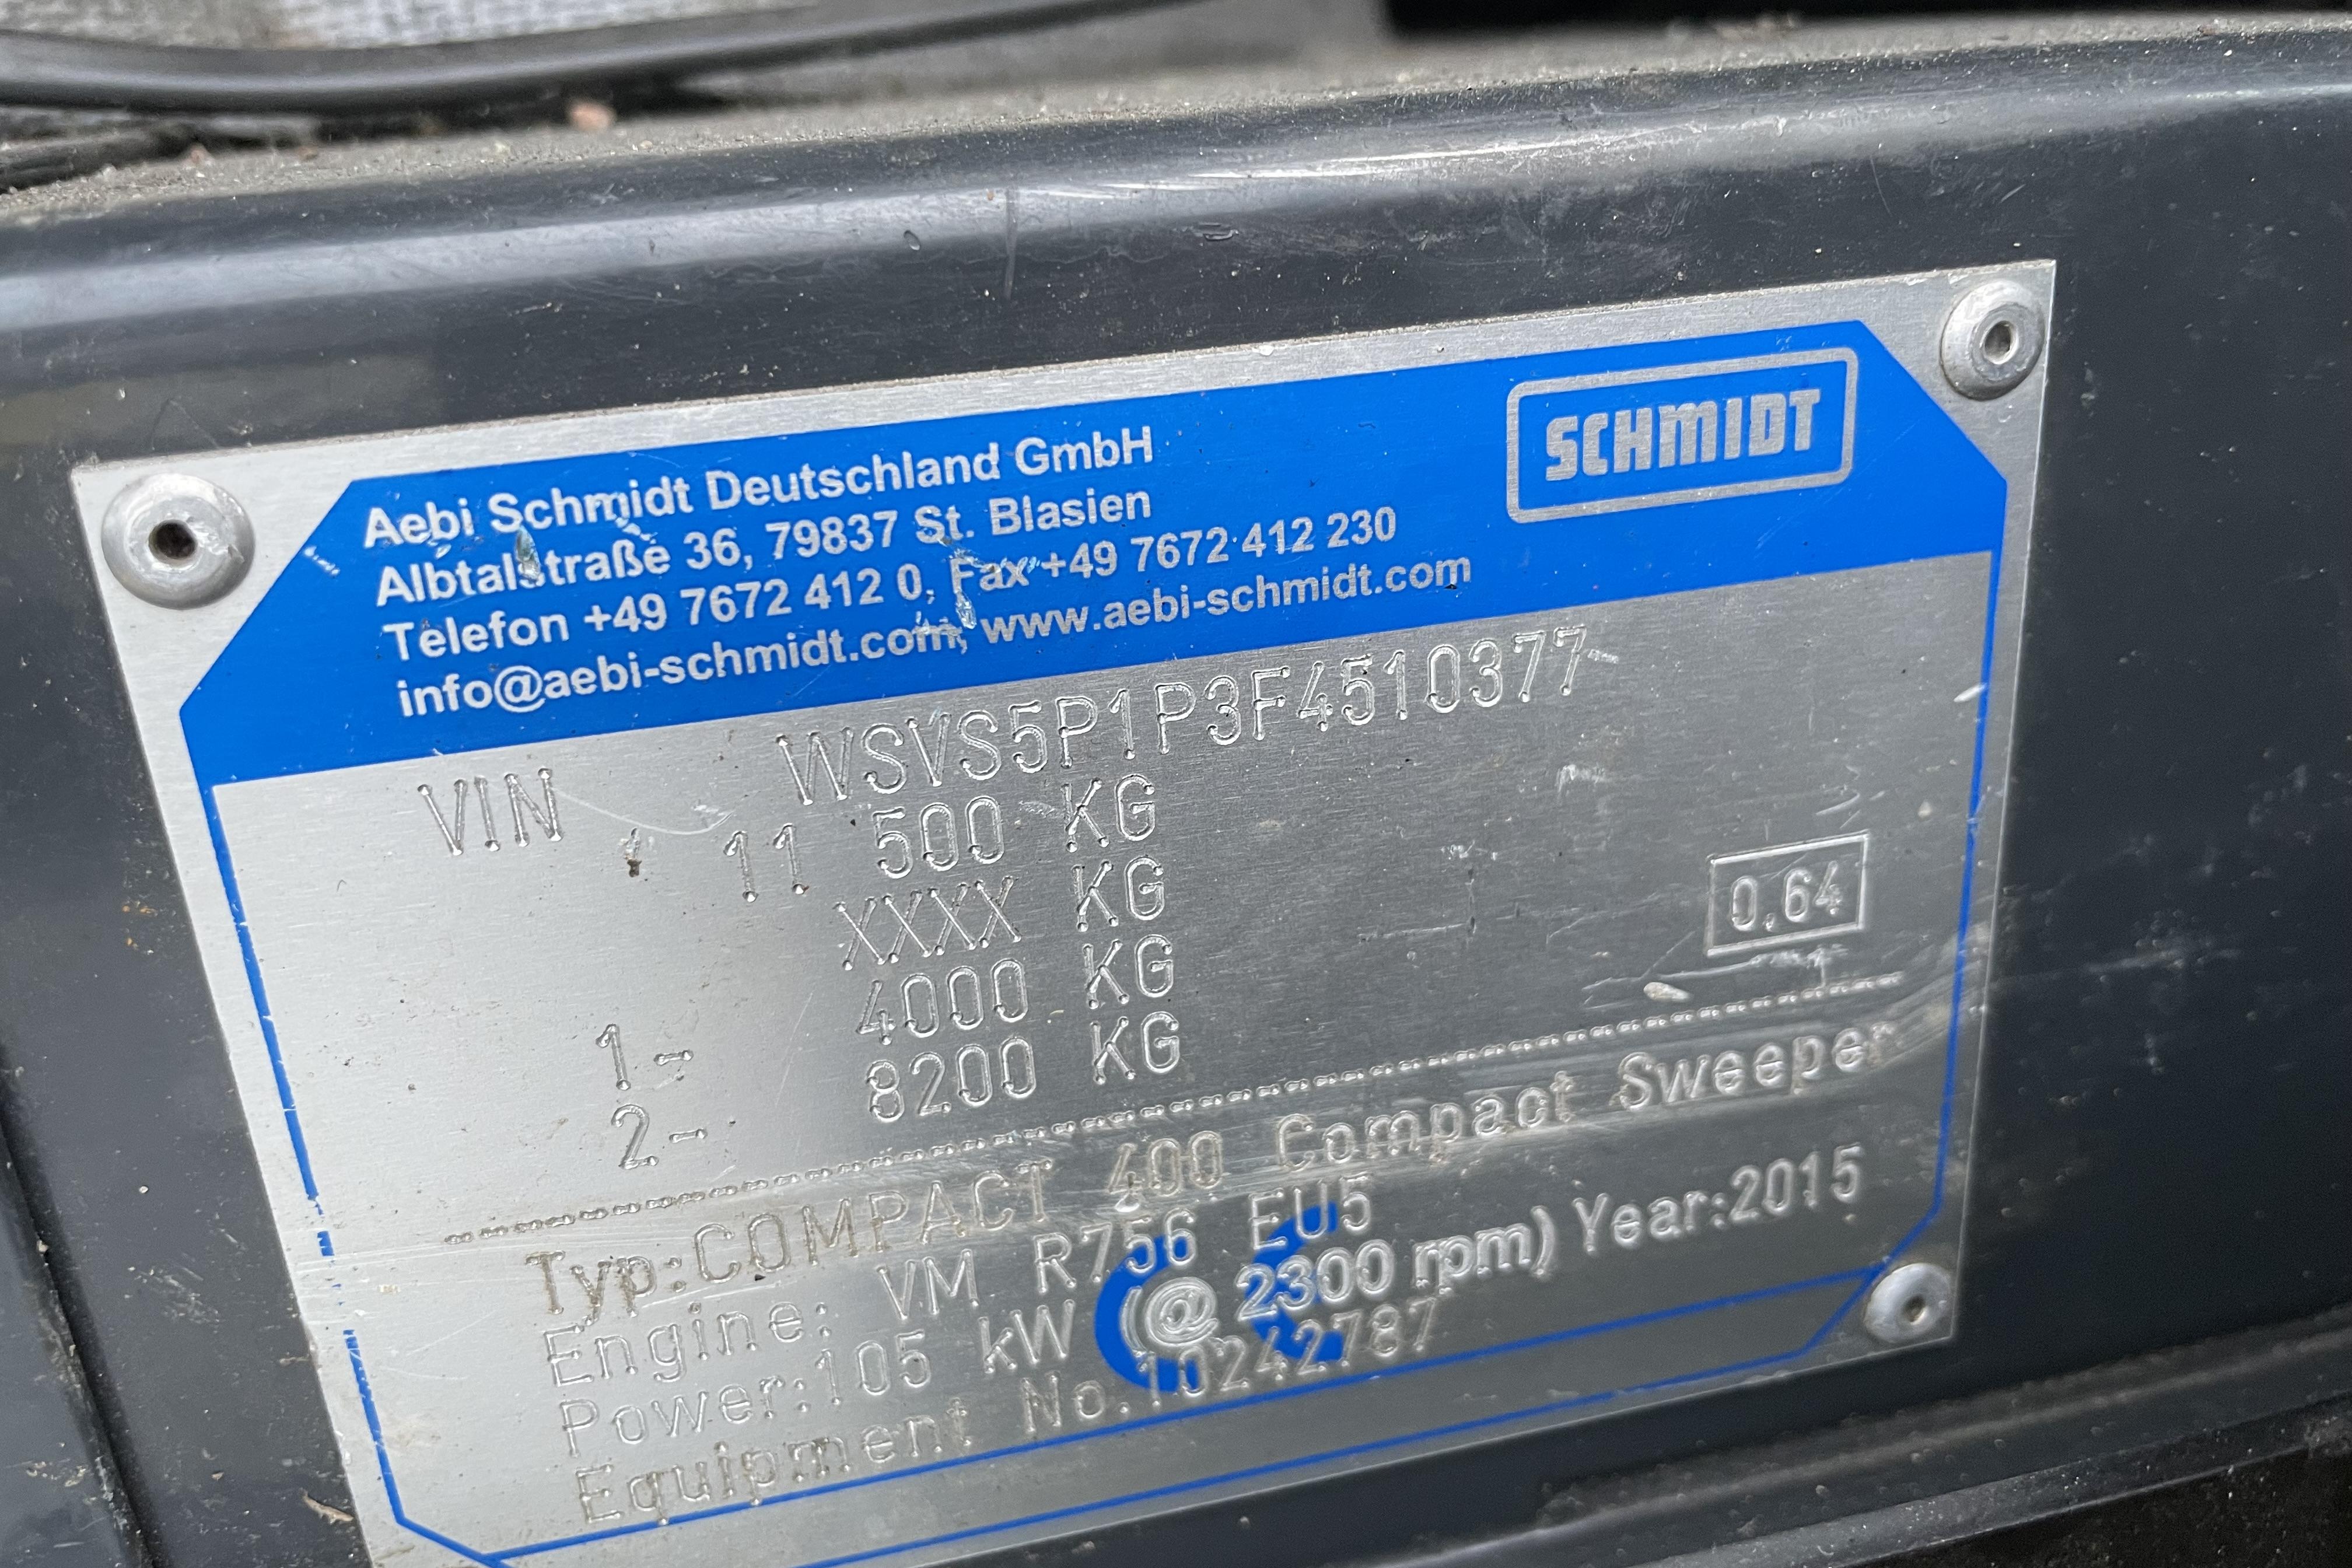 Schmidt Cleango 500 / Compact 400 Sweeper Sopmaskin -  - 2015